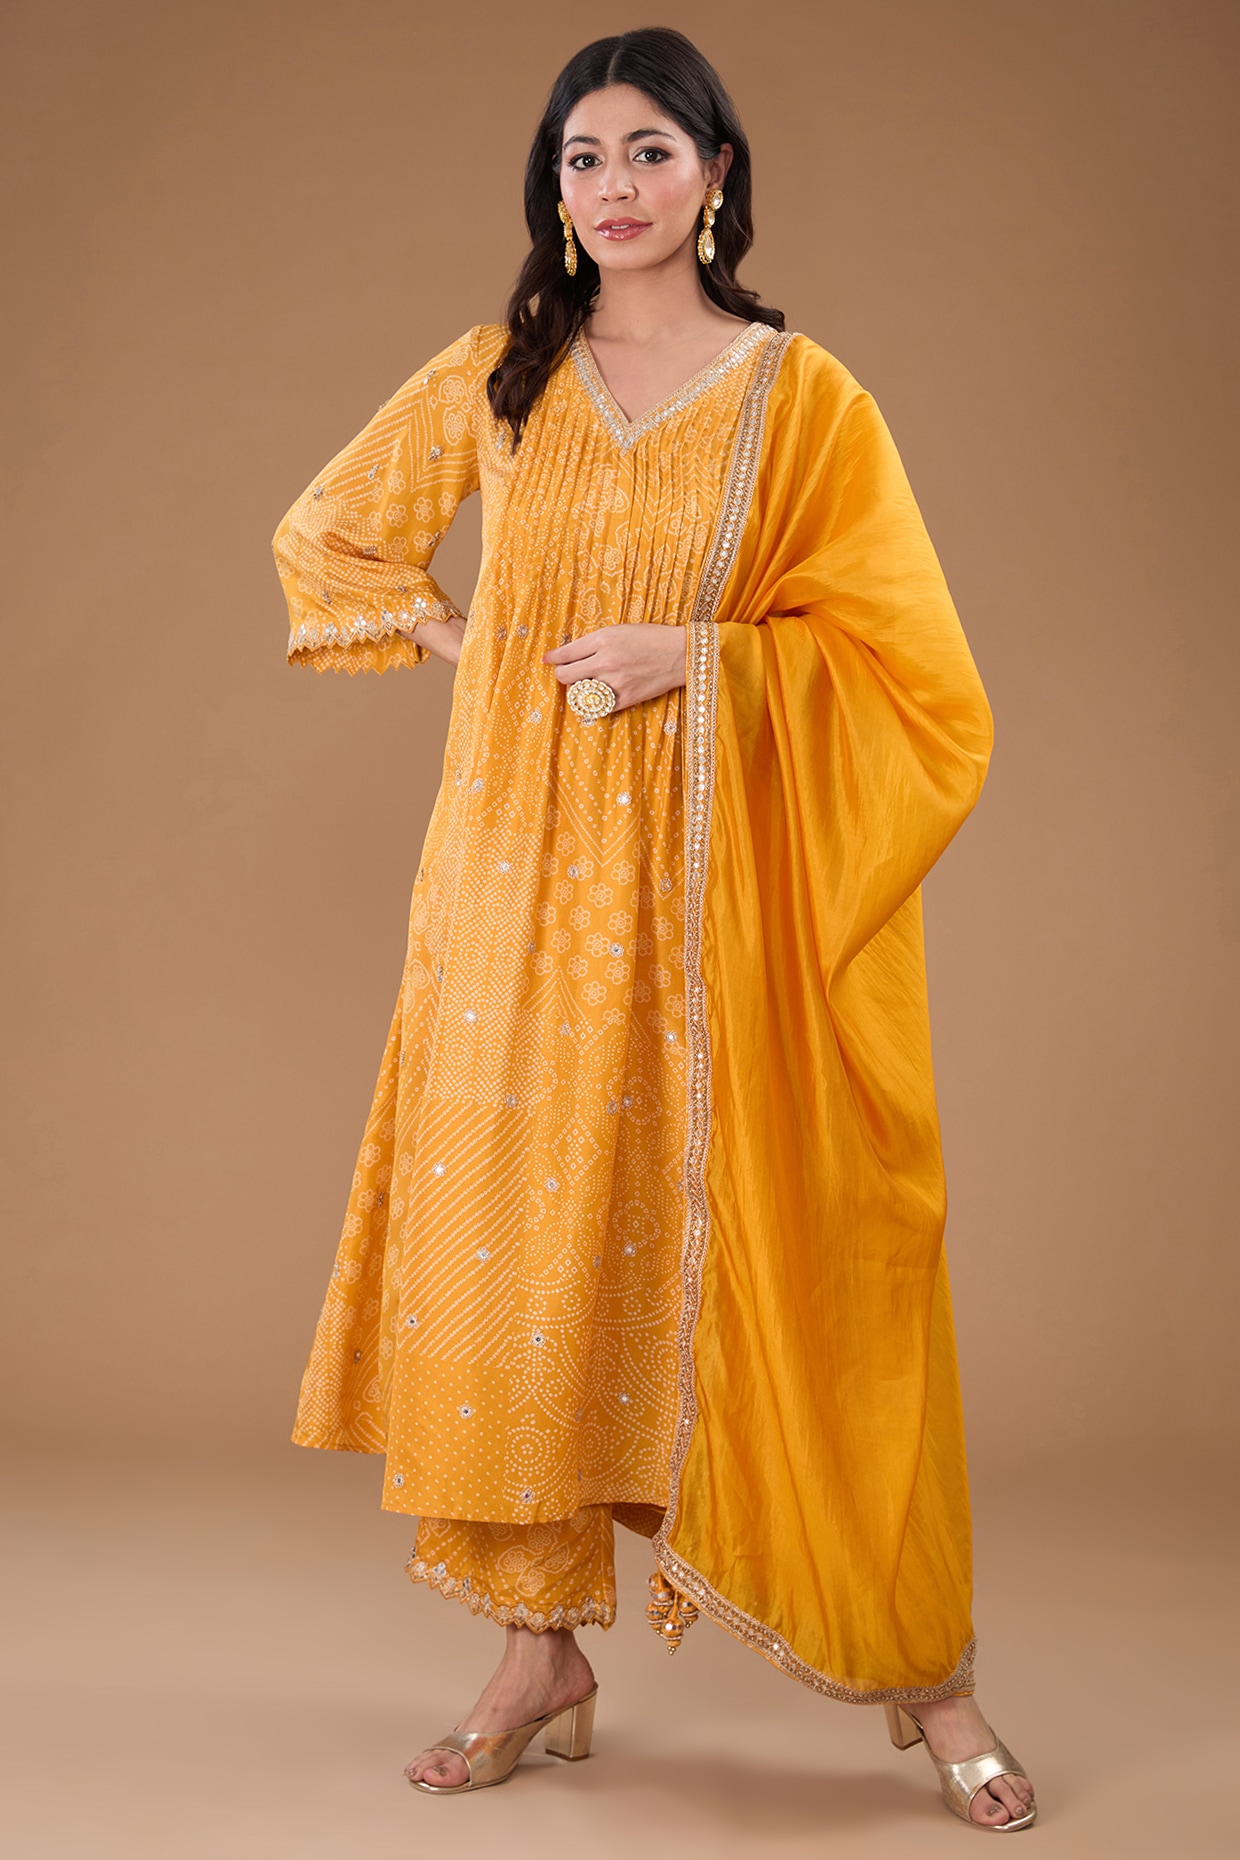 Plain Suit Design Images 2020 || Punjabi Suit With Lace Design || Sleeve  Less Salwar Suit Design - YouTube